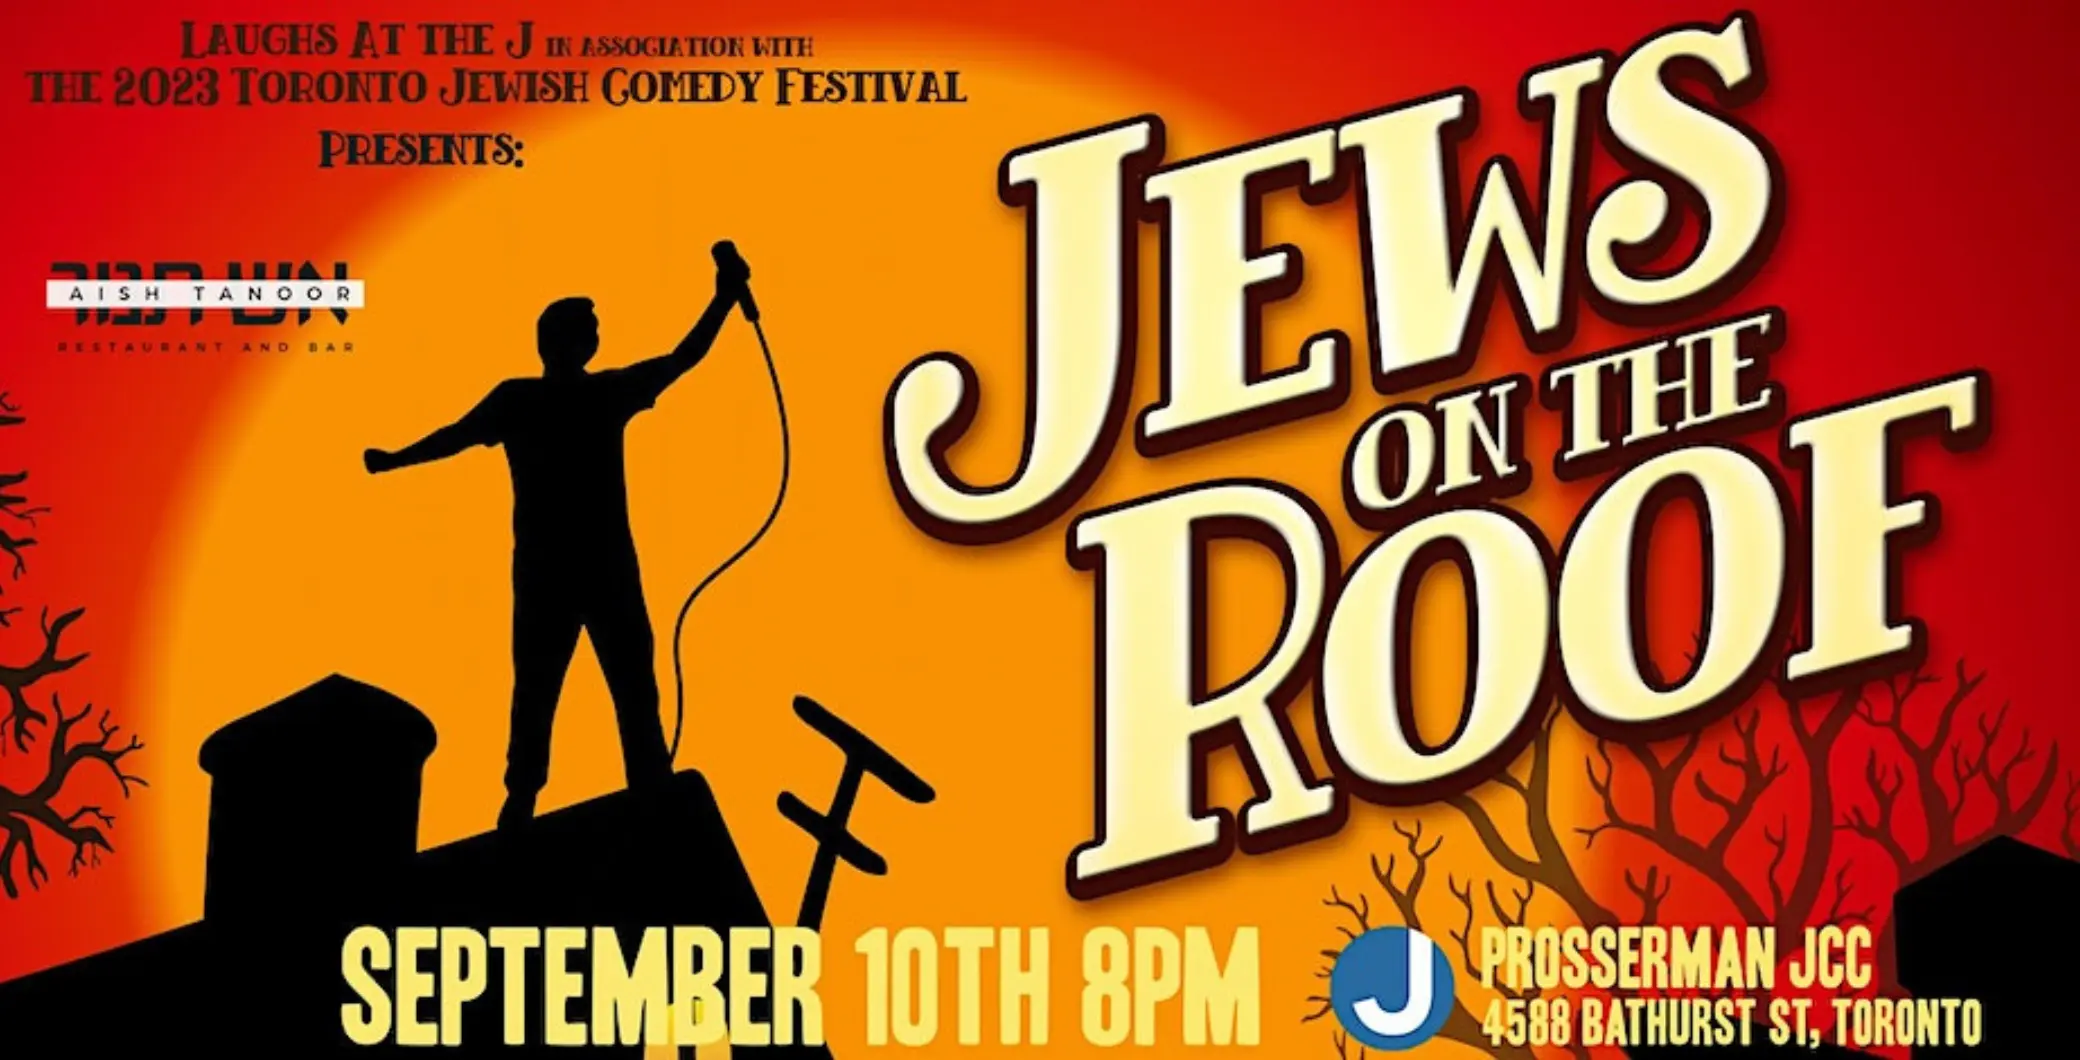 周日将举行多伦多犹太喜剧电影节盛大晚会，门票正在售卖中。